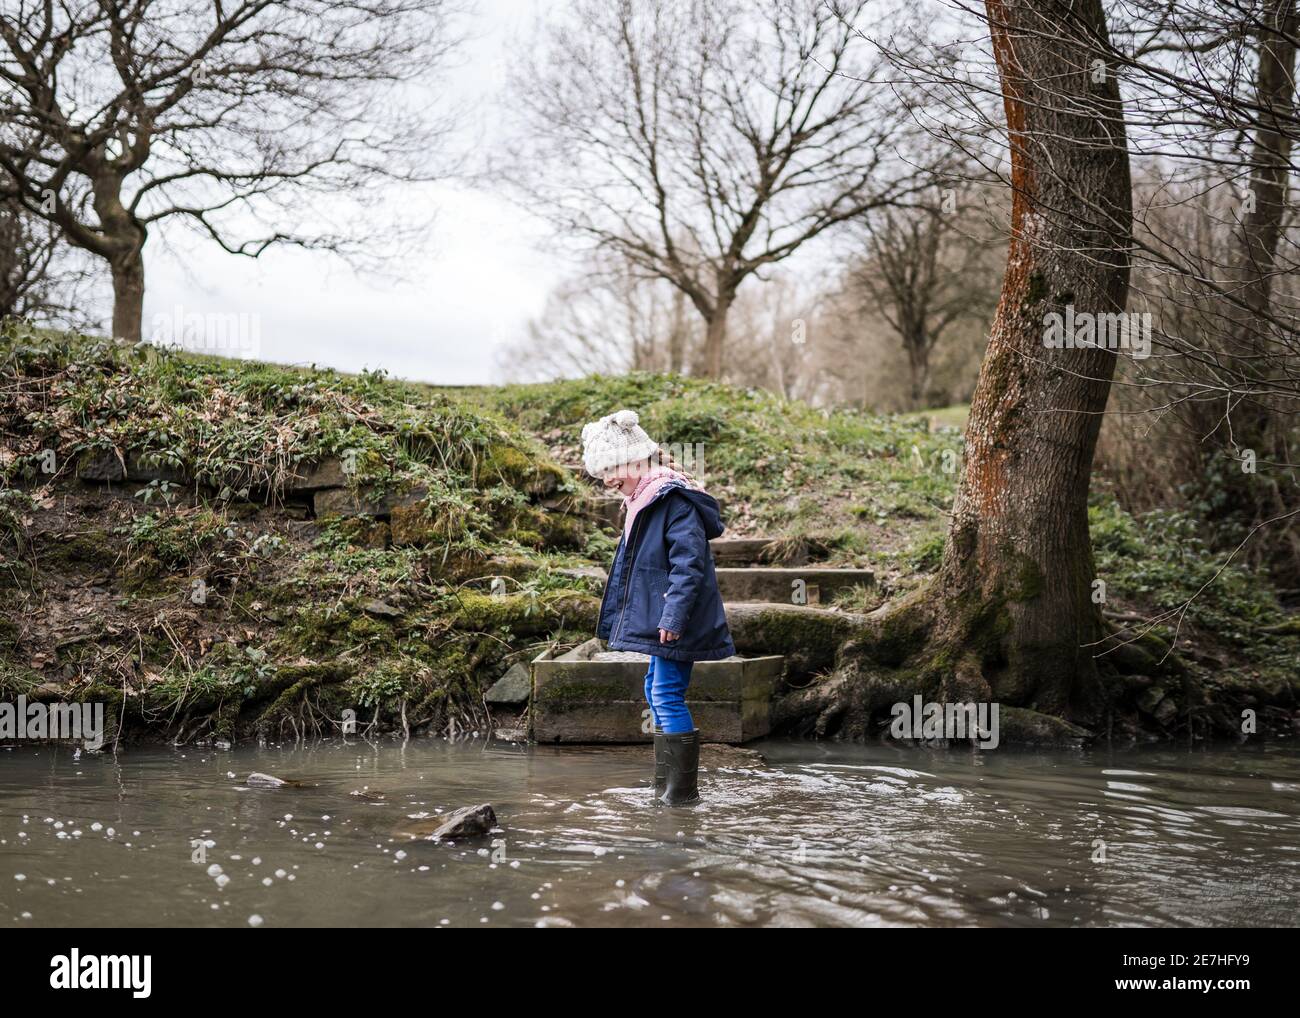 Aufgeregt glücklich junge Mädchen wellinton Stiefel zu Fuß durch die herbstliche Landschaft Flusslauf plantschen im Wasser Erforschen der freien Natur bobble hut Stockfoto